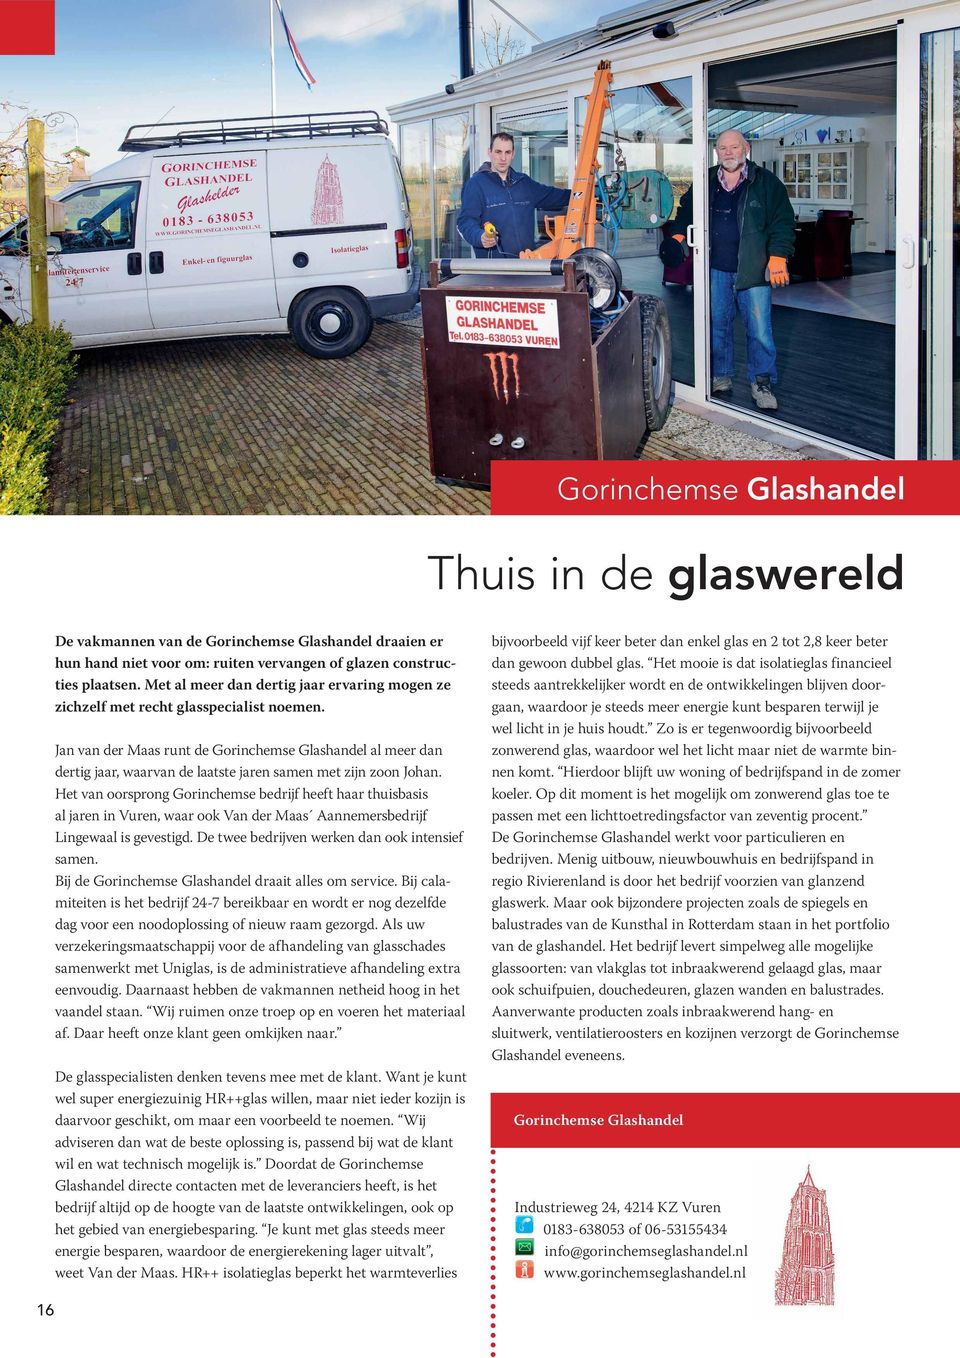 Jan van der Maas runt de Gorinchemse Glashandel al meer dan dertig jaar, waarvan de laatste jaren samen met zijn zoon Johan.